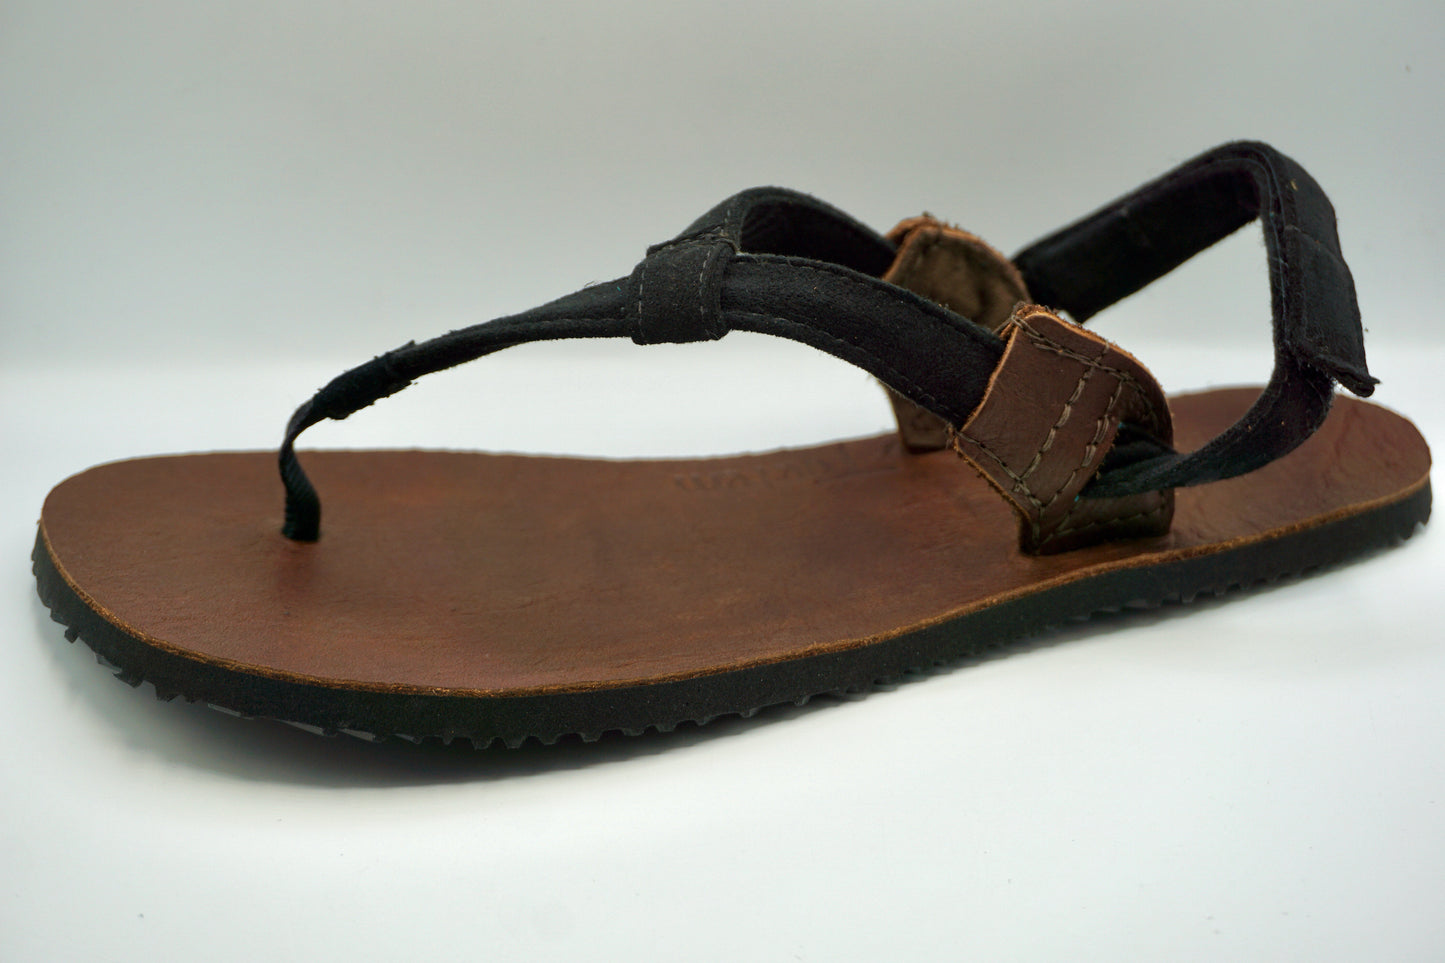 JackRabbit Sandals ALPHA Leather